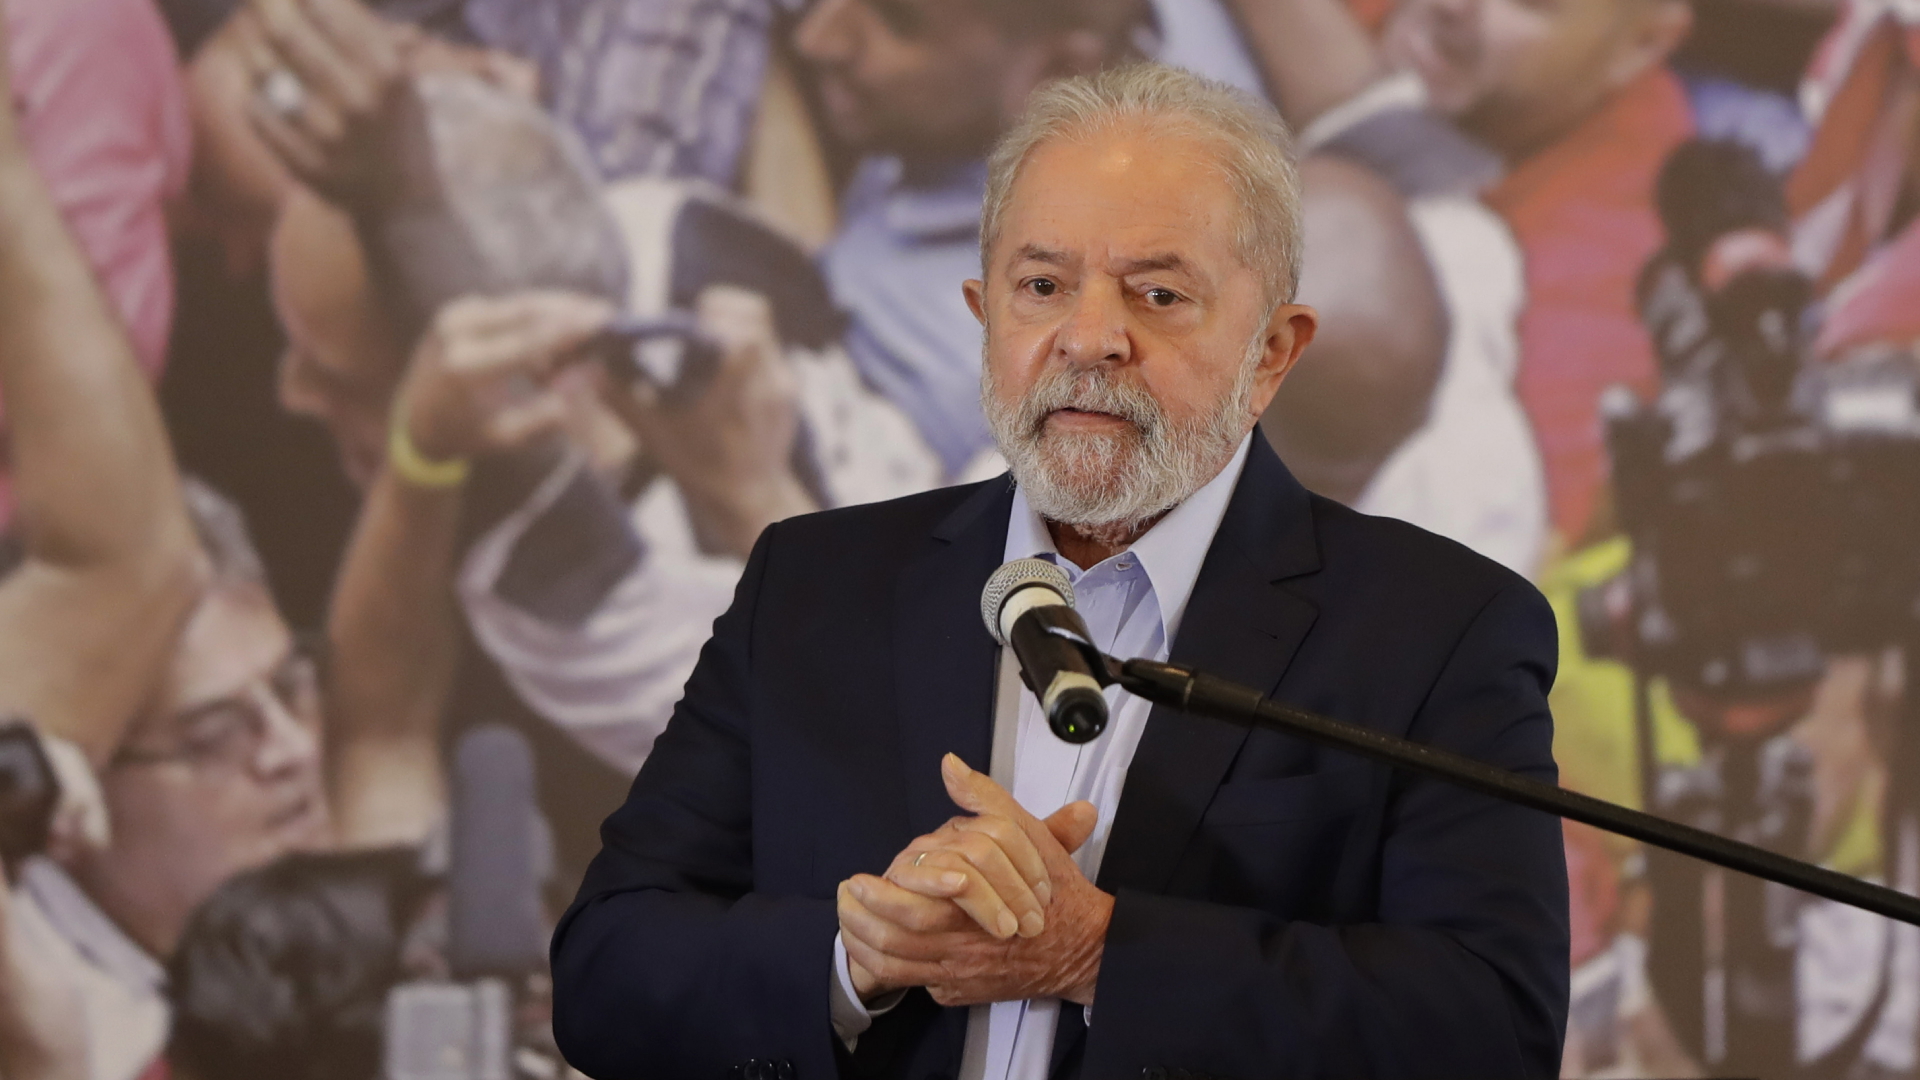 Luiz Inacio Lula da Silva, ehemaliger brasilianischer Präsident, spricht in der Zentrale der Metallarbeitergewerkschaft (Archivbild). | dpa